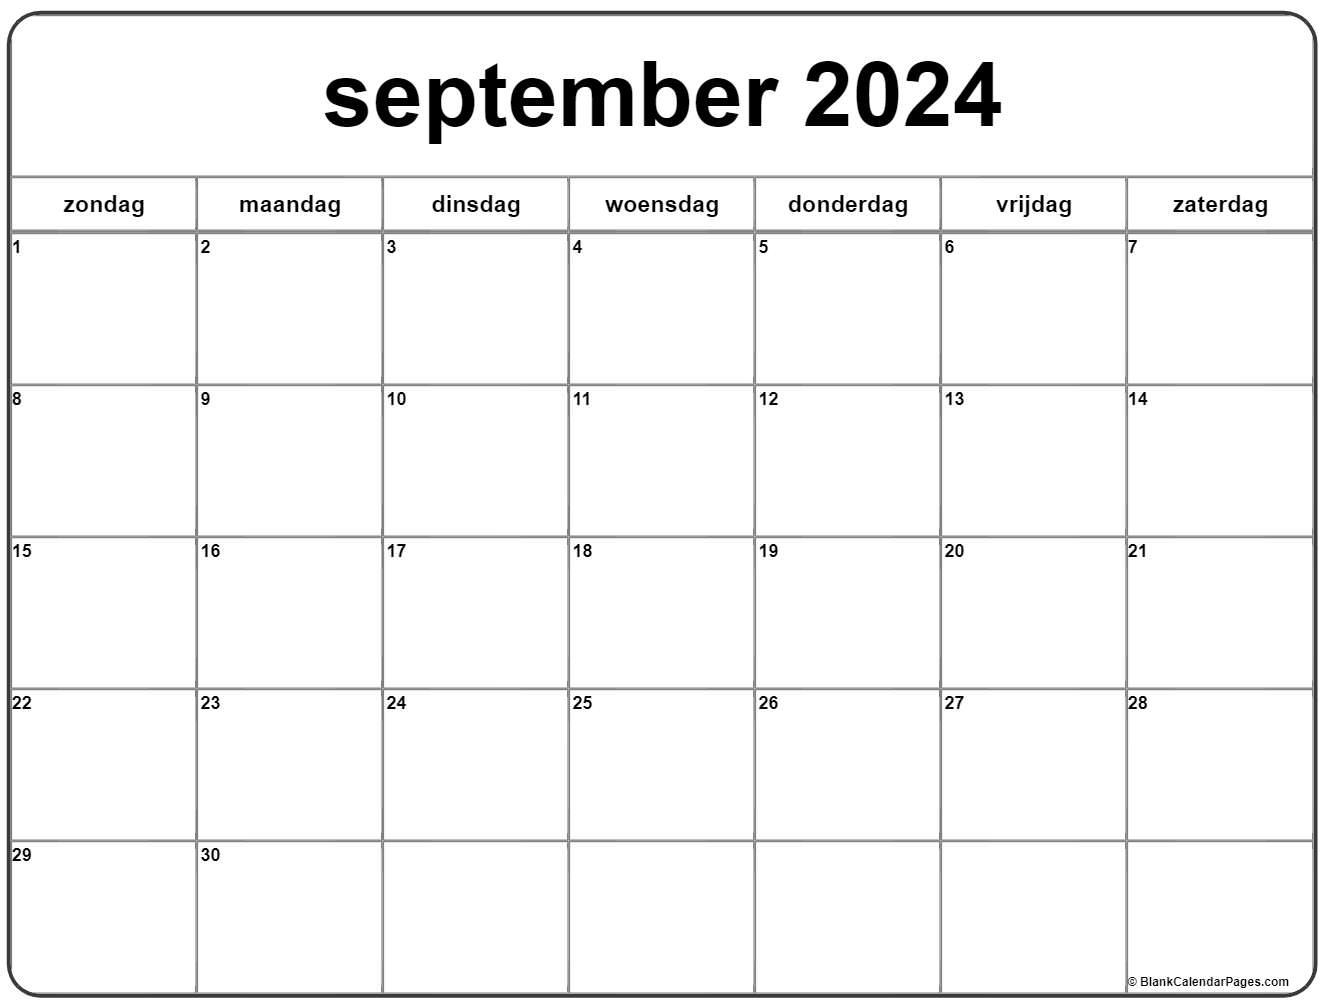 Inspecteur omverwerping Omtrek september 2022 kalender Nederlandse | Kalender september